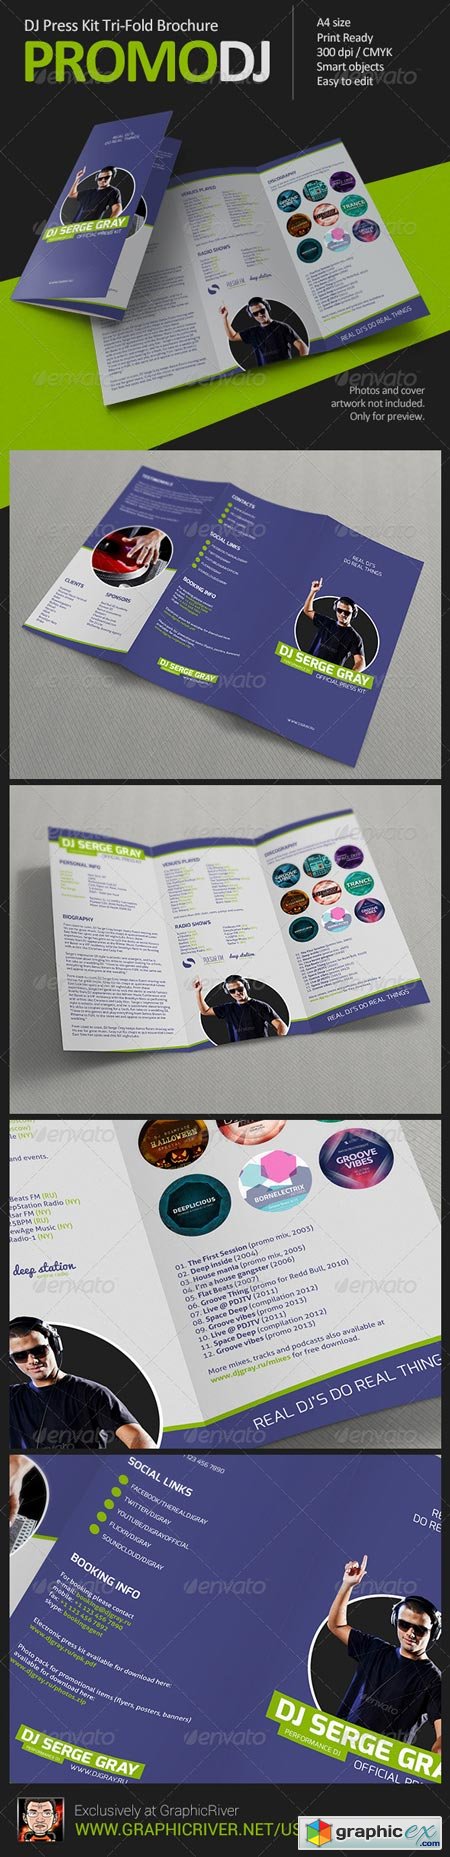 PromoDJ - DJ Press Kit Tri-Fold Brochure 6239966